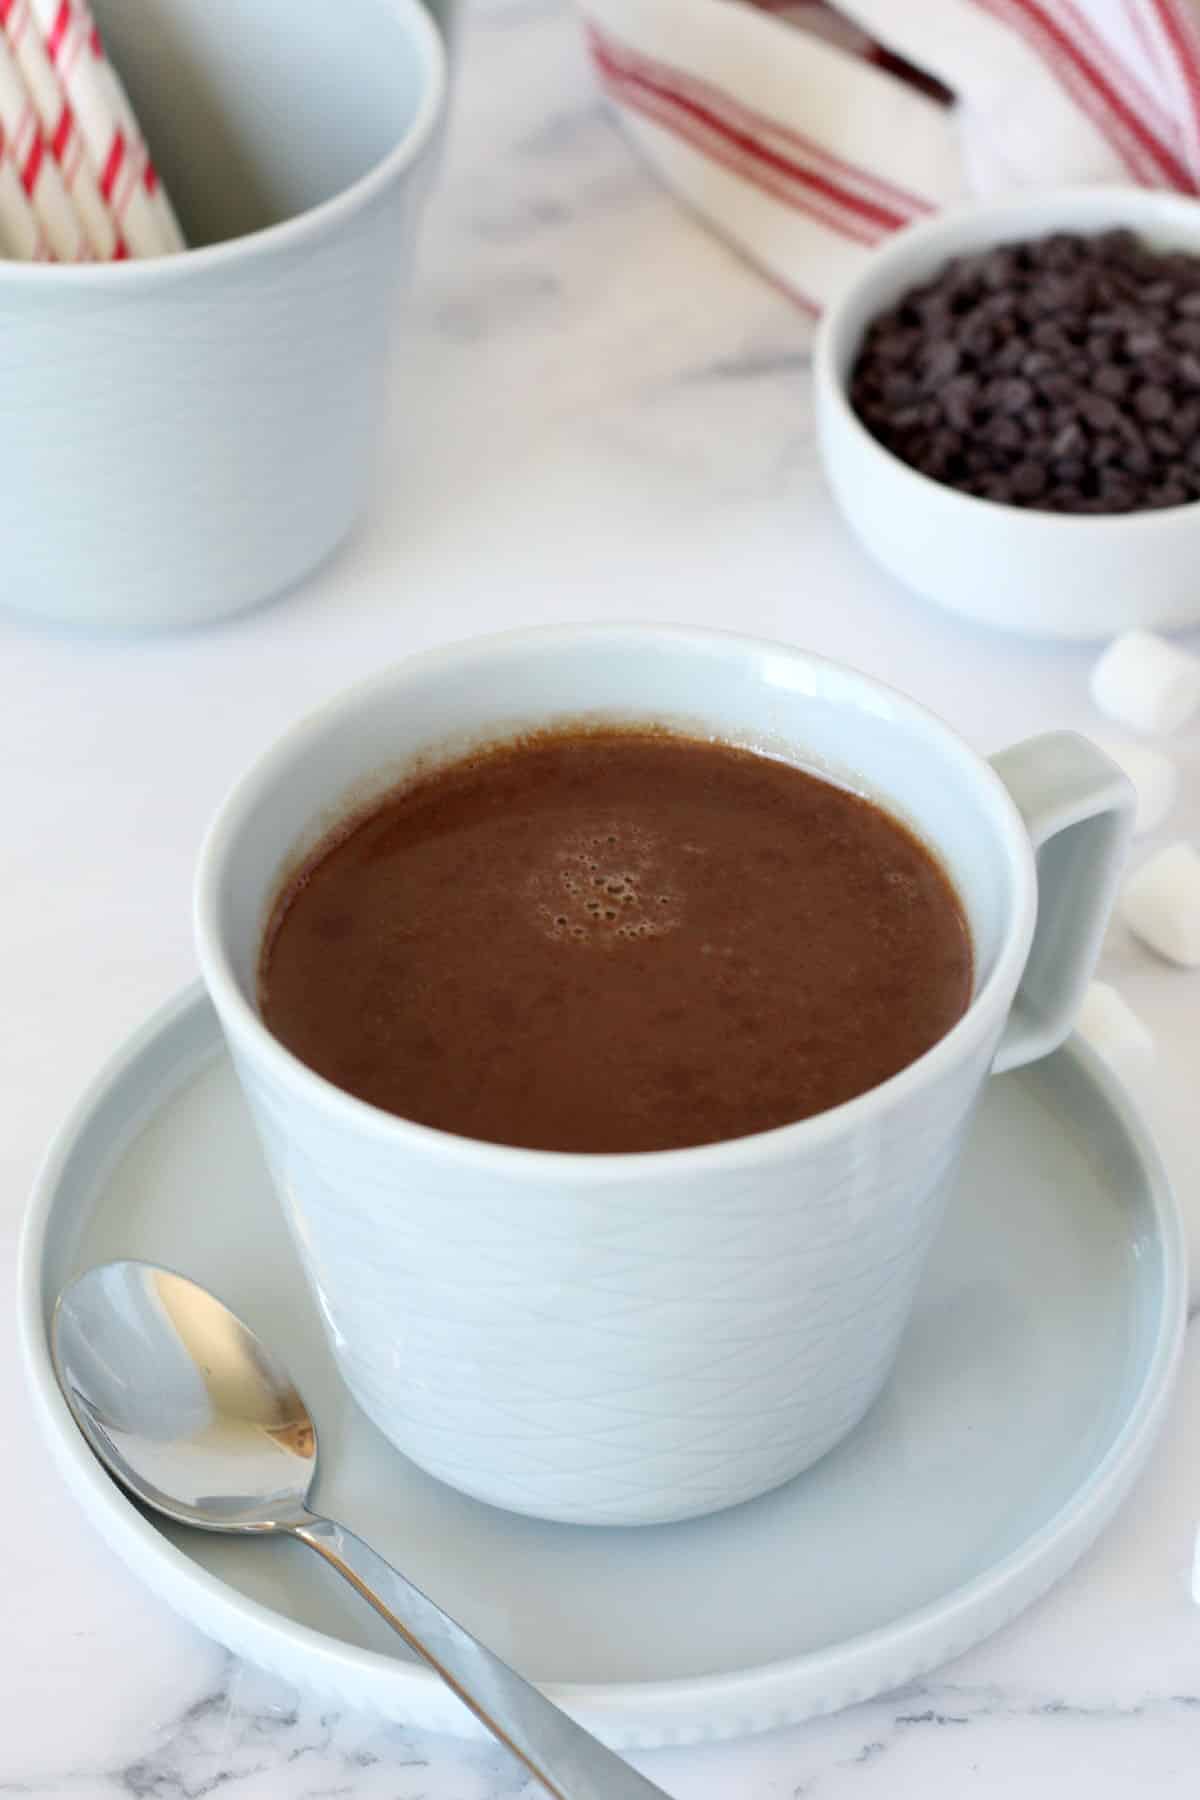 یک لیوان شکلات داغ در یک لیوان آبی با یک کاسه چیپس شکلات در پس زمینه